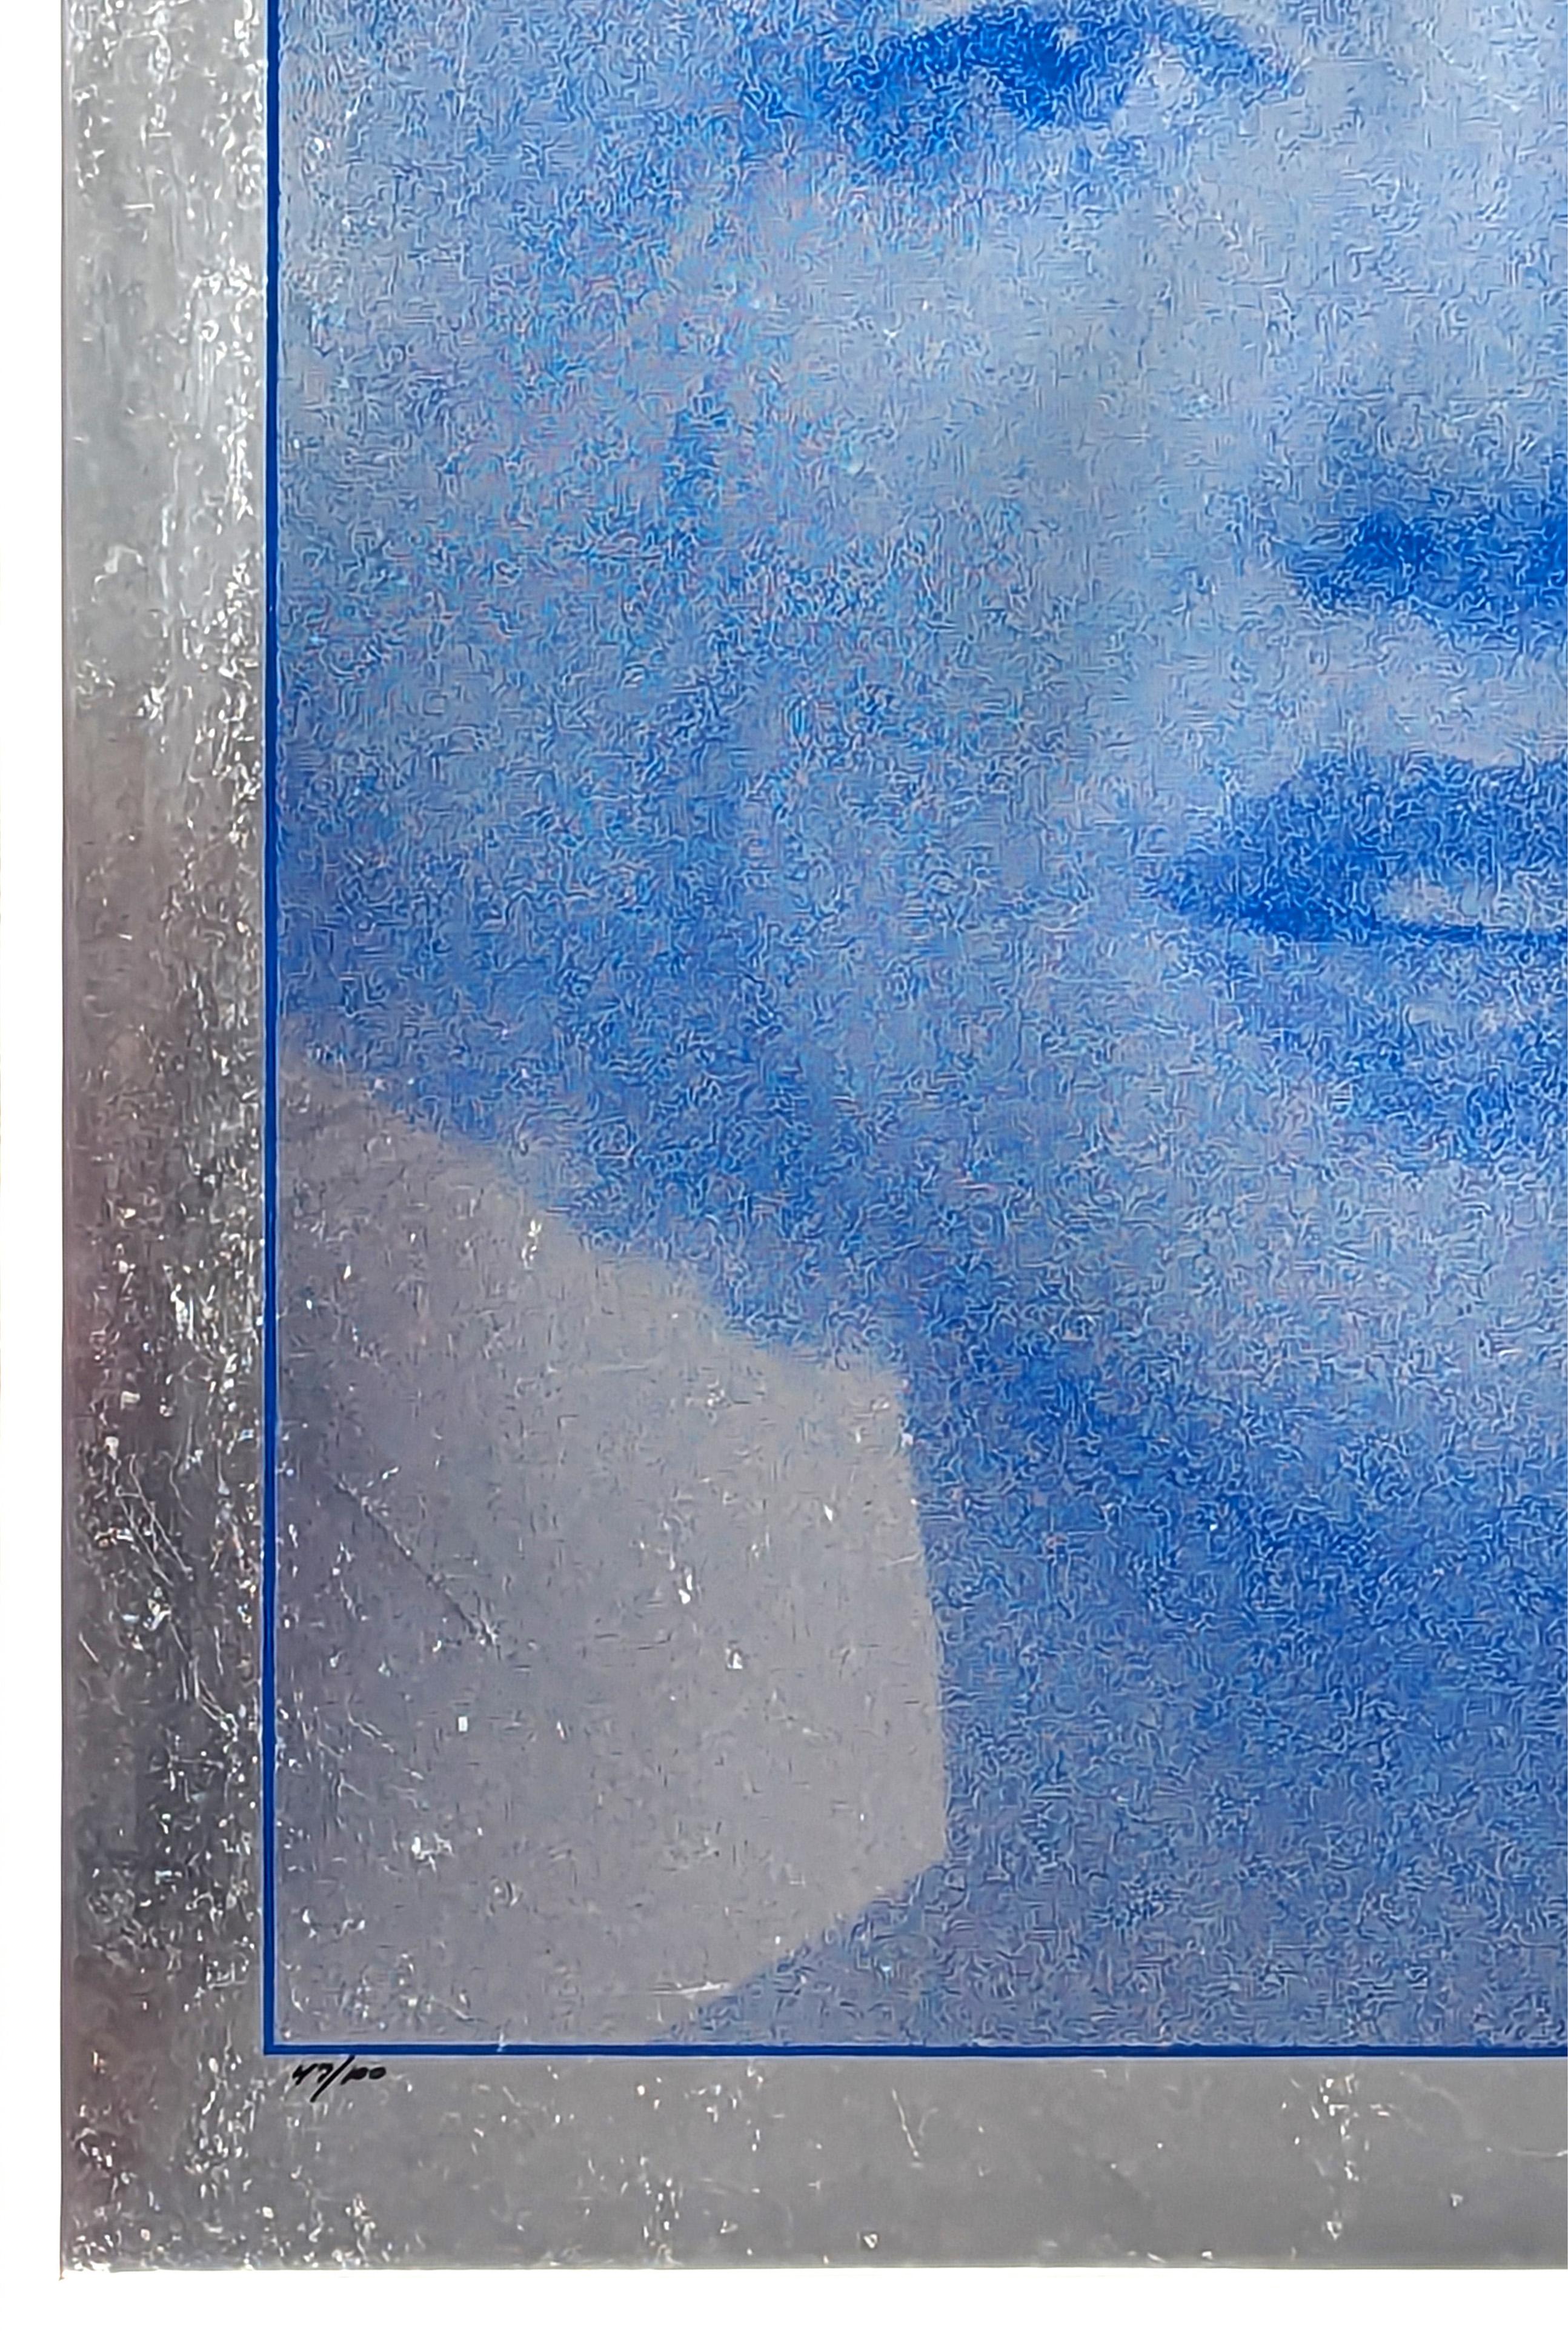 Blautoniger Siebdruck des Porträts der Schauspielerin Marilyn Monroe vom legendären Fotografen Bert Stern. Das Stück zeigt ein blaues Kopfporträt von Marilyn in Blau auf einer metallischen Silberfolie. 
Am vorderen unteren Rand signiert und ediert.